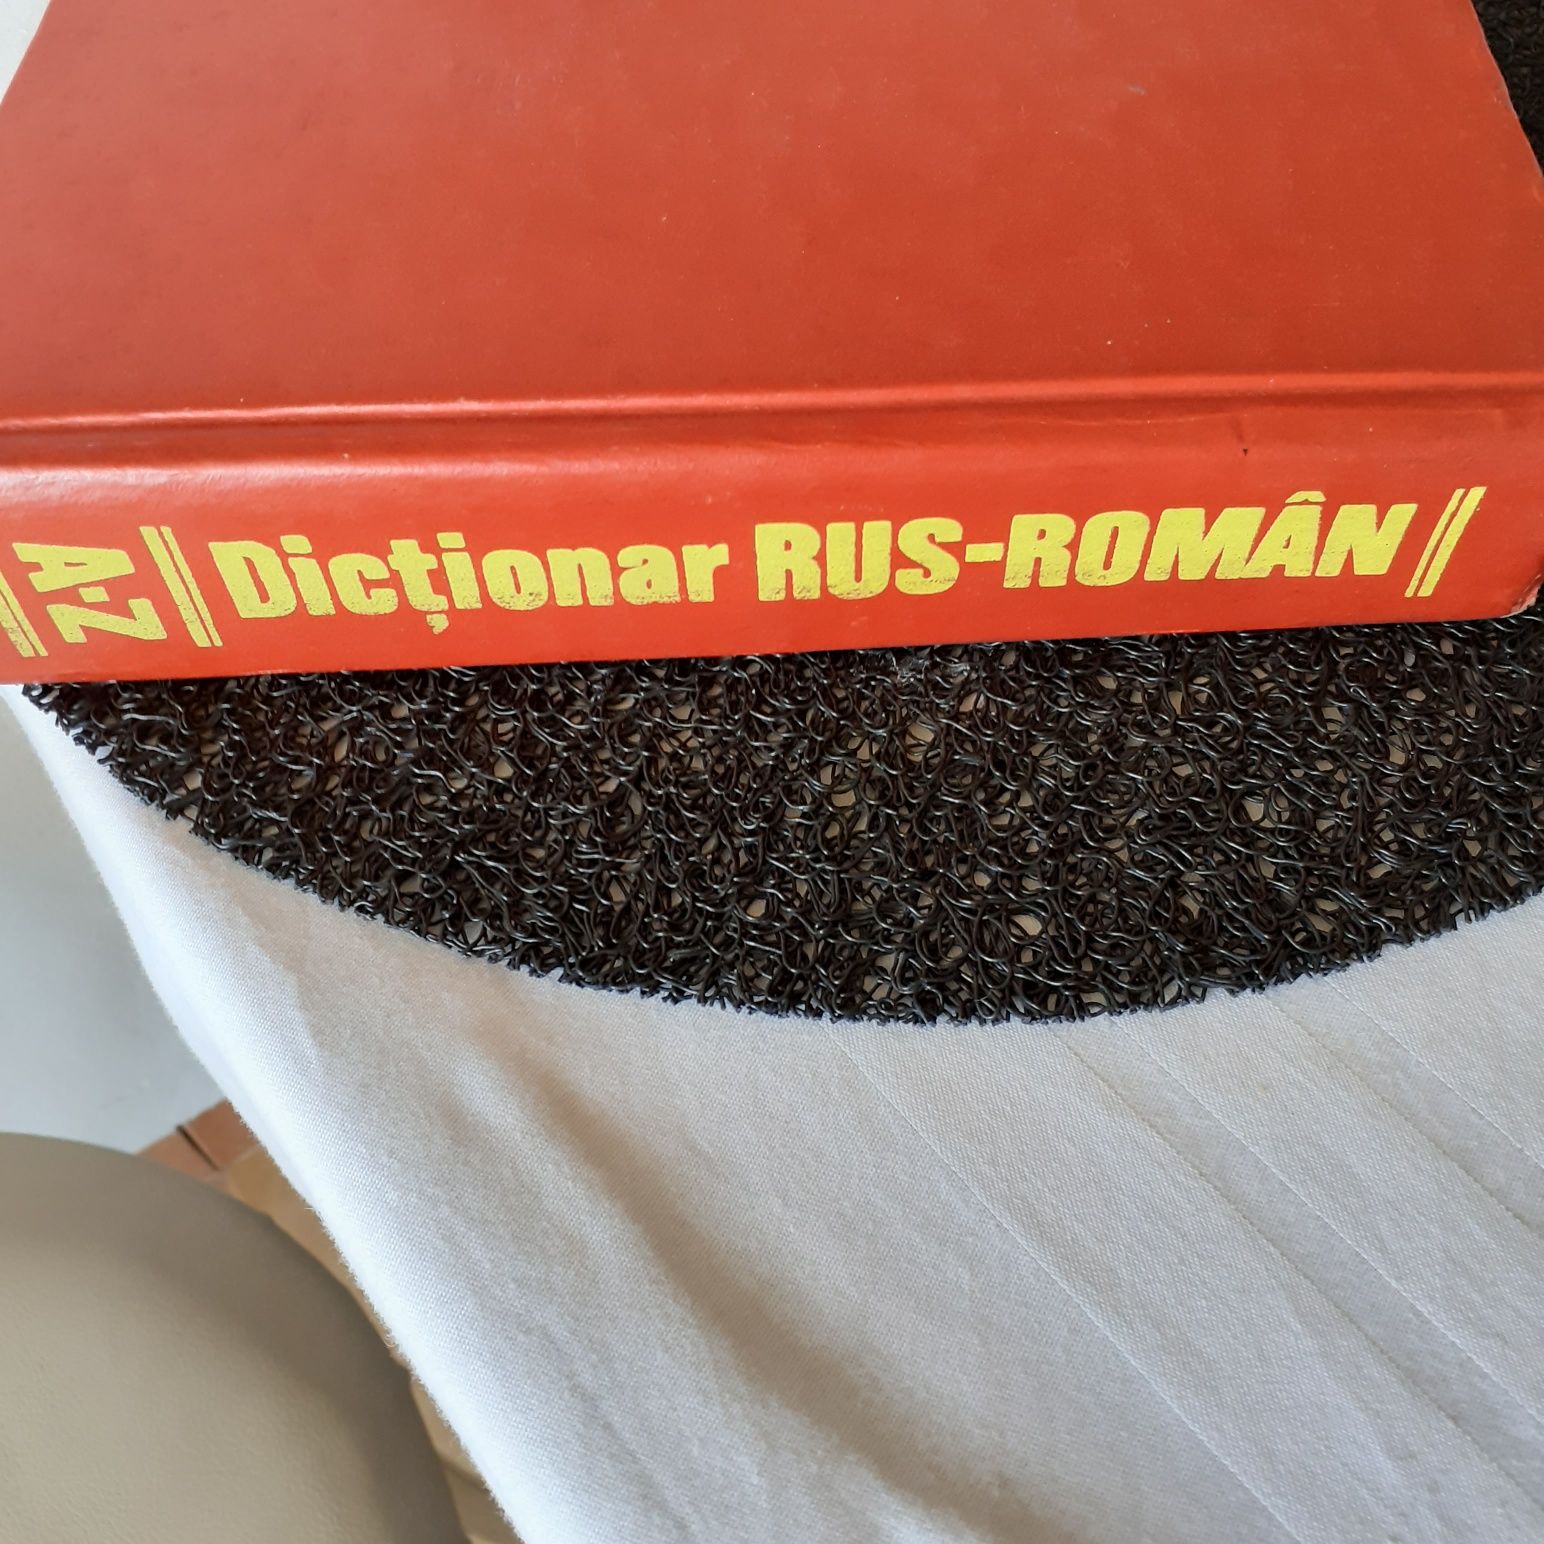 Dictionar